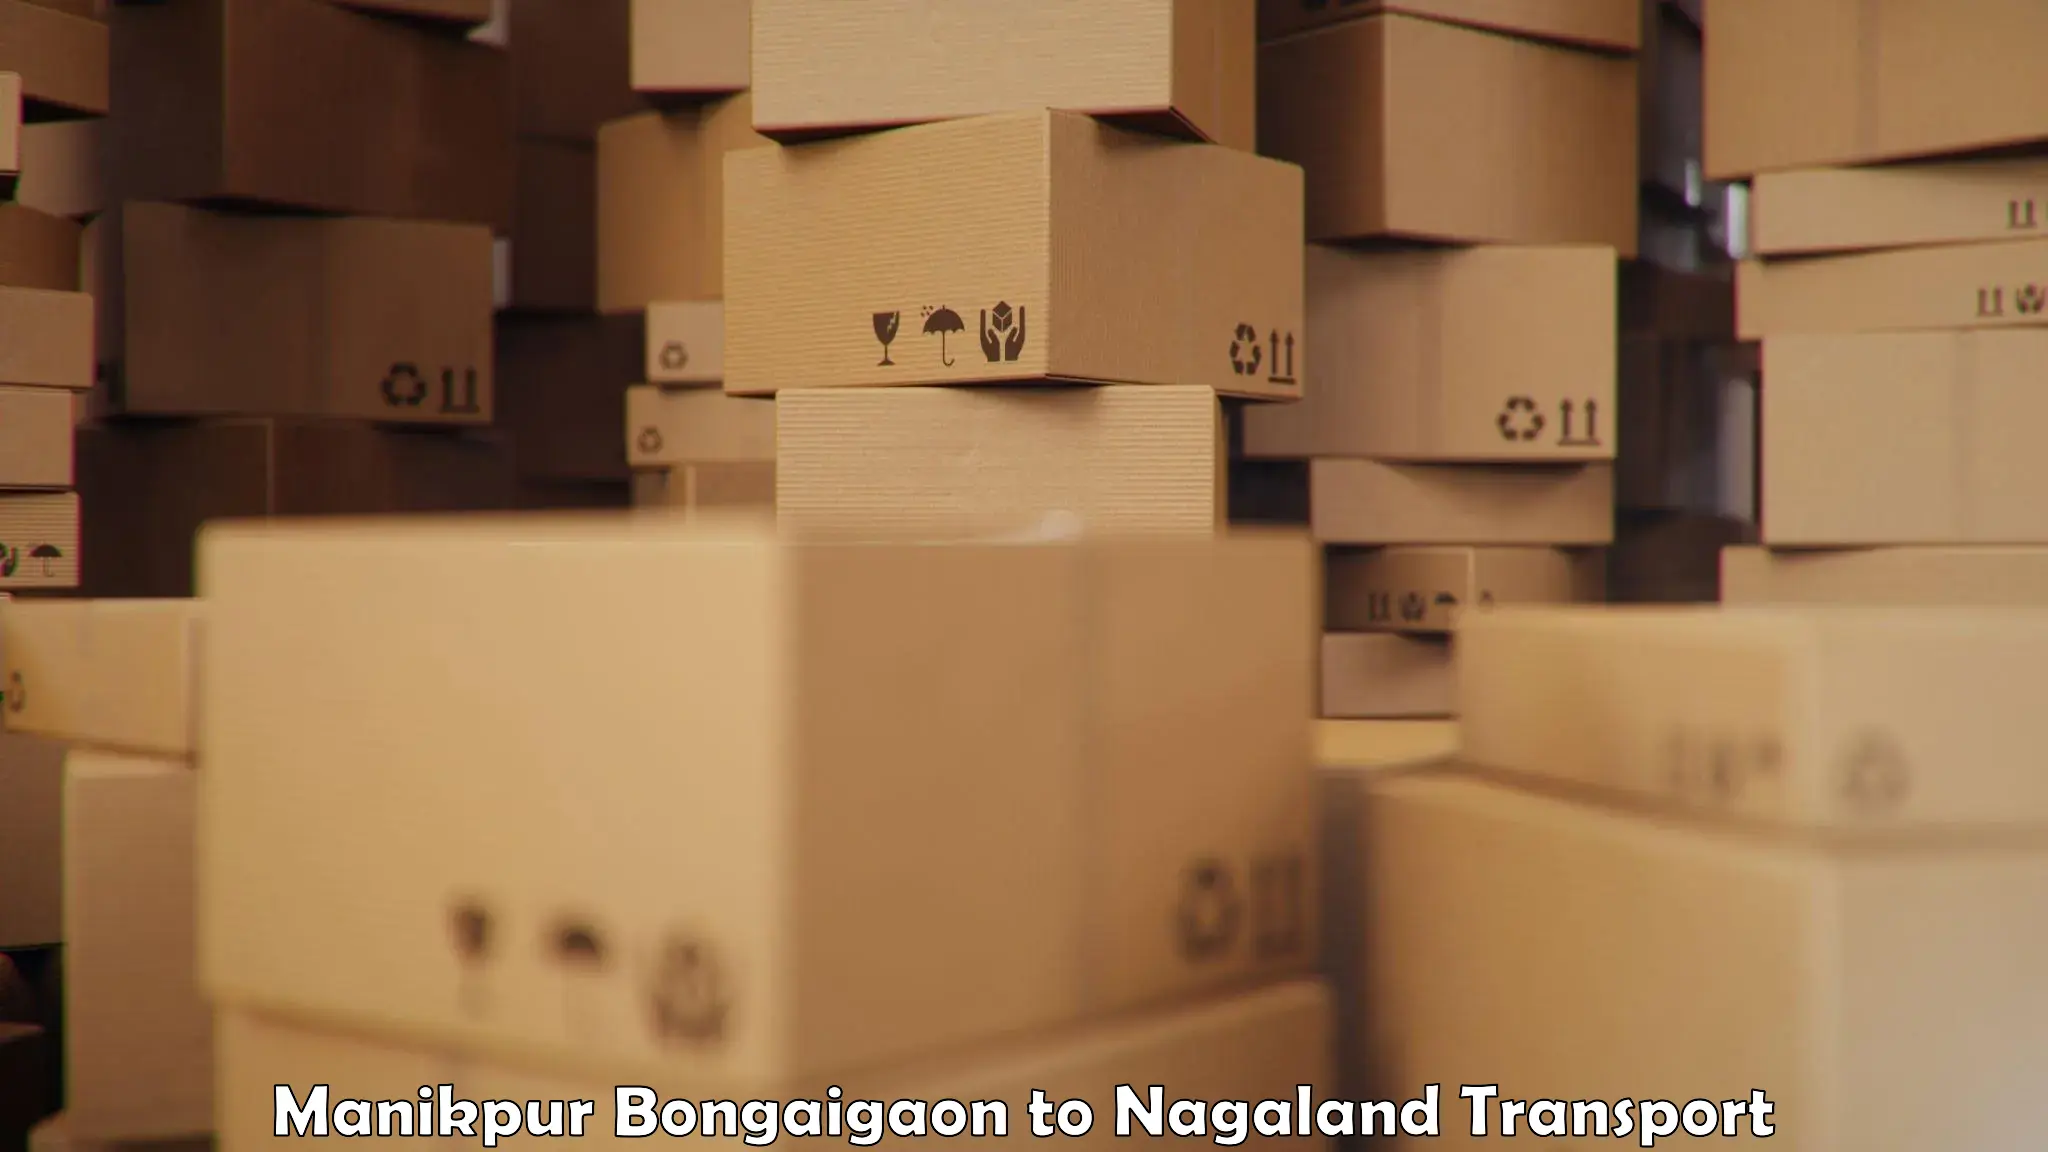 Online transport service Manikpur Bongaigaon to Peren